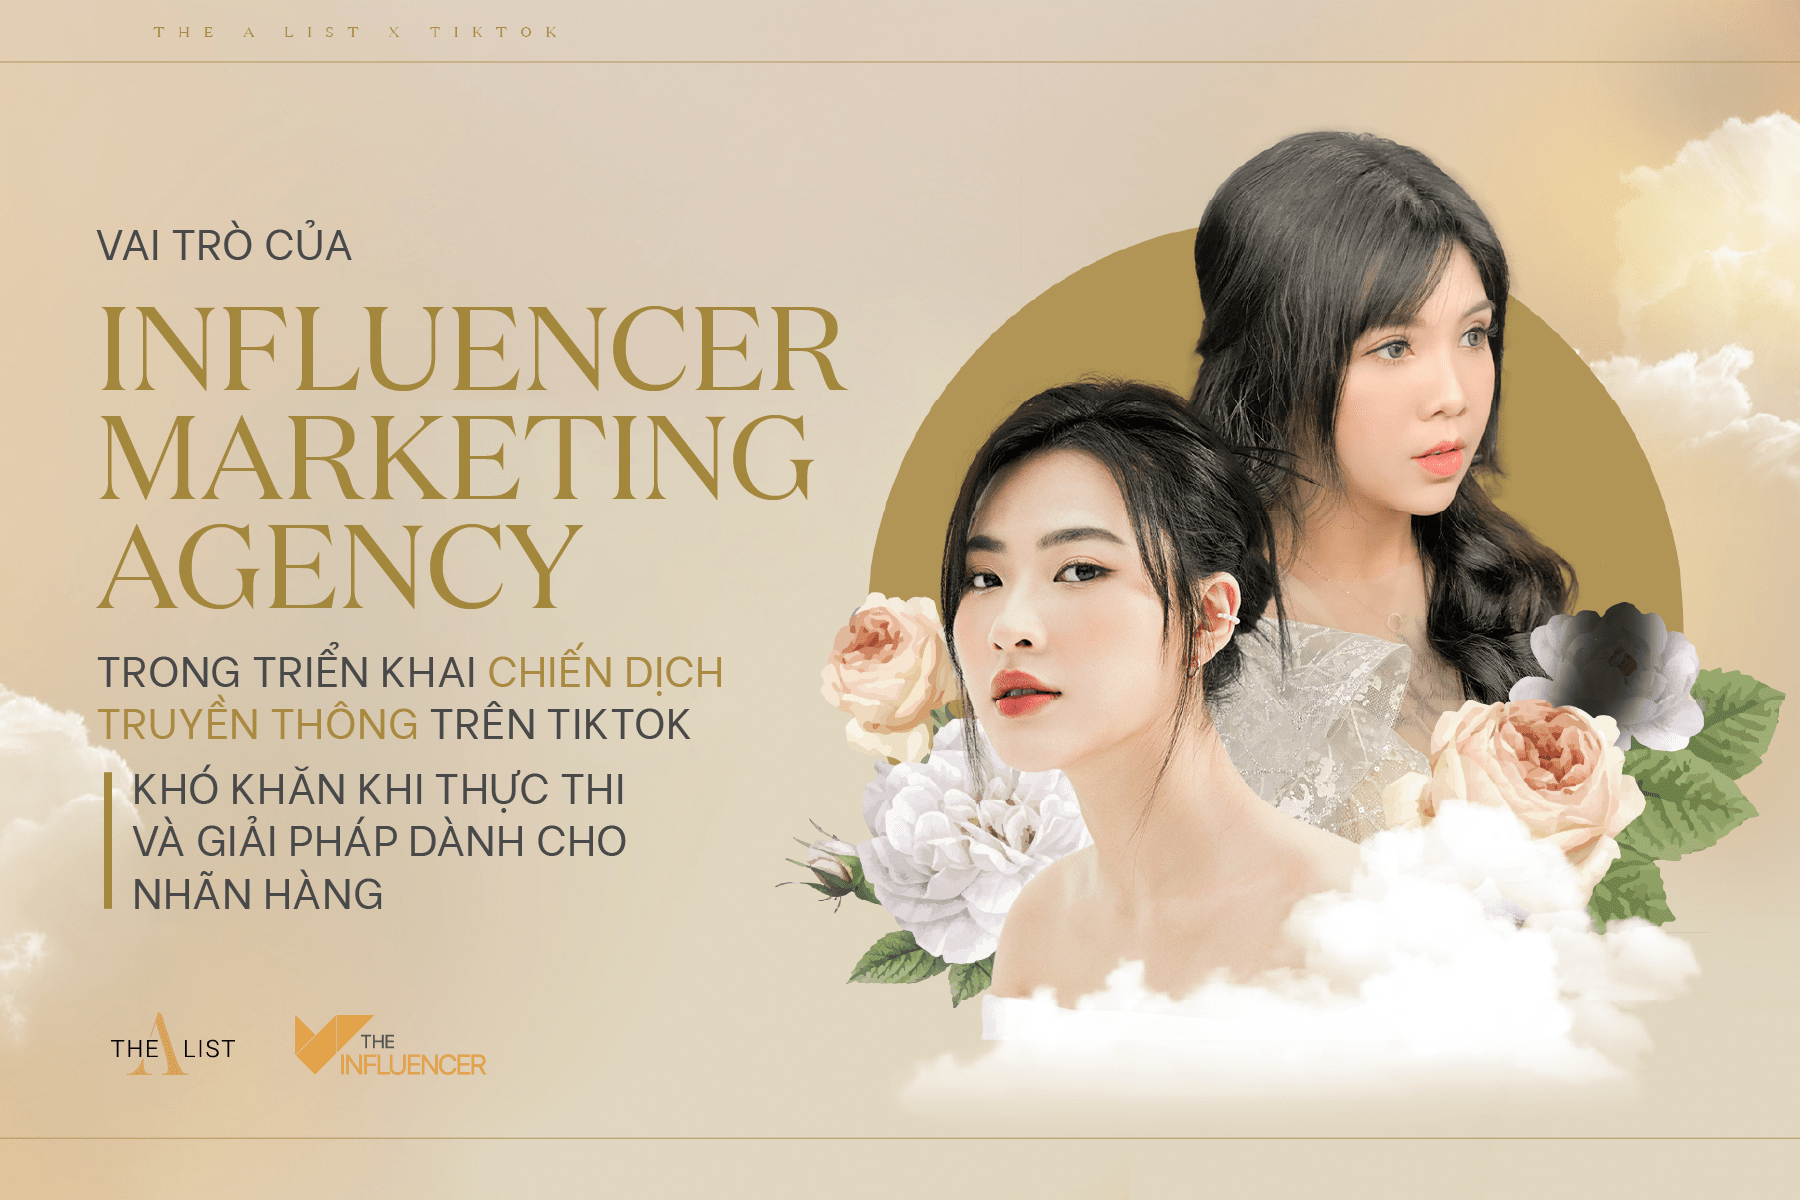 Vai trò của Influencer Marketing Agency trong chiến dịch truyền thông trên TikTok: Khó khăn khi thực thi và giải pháp dành cho nhãn hàng